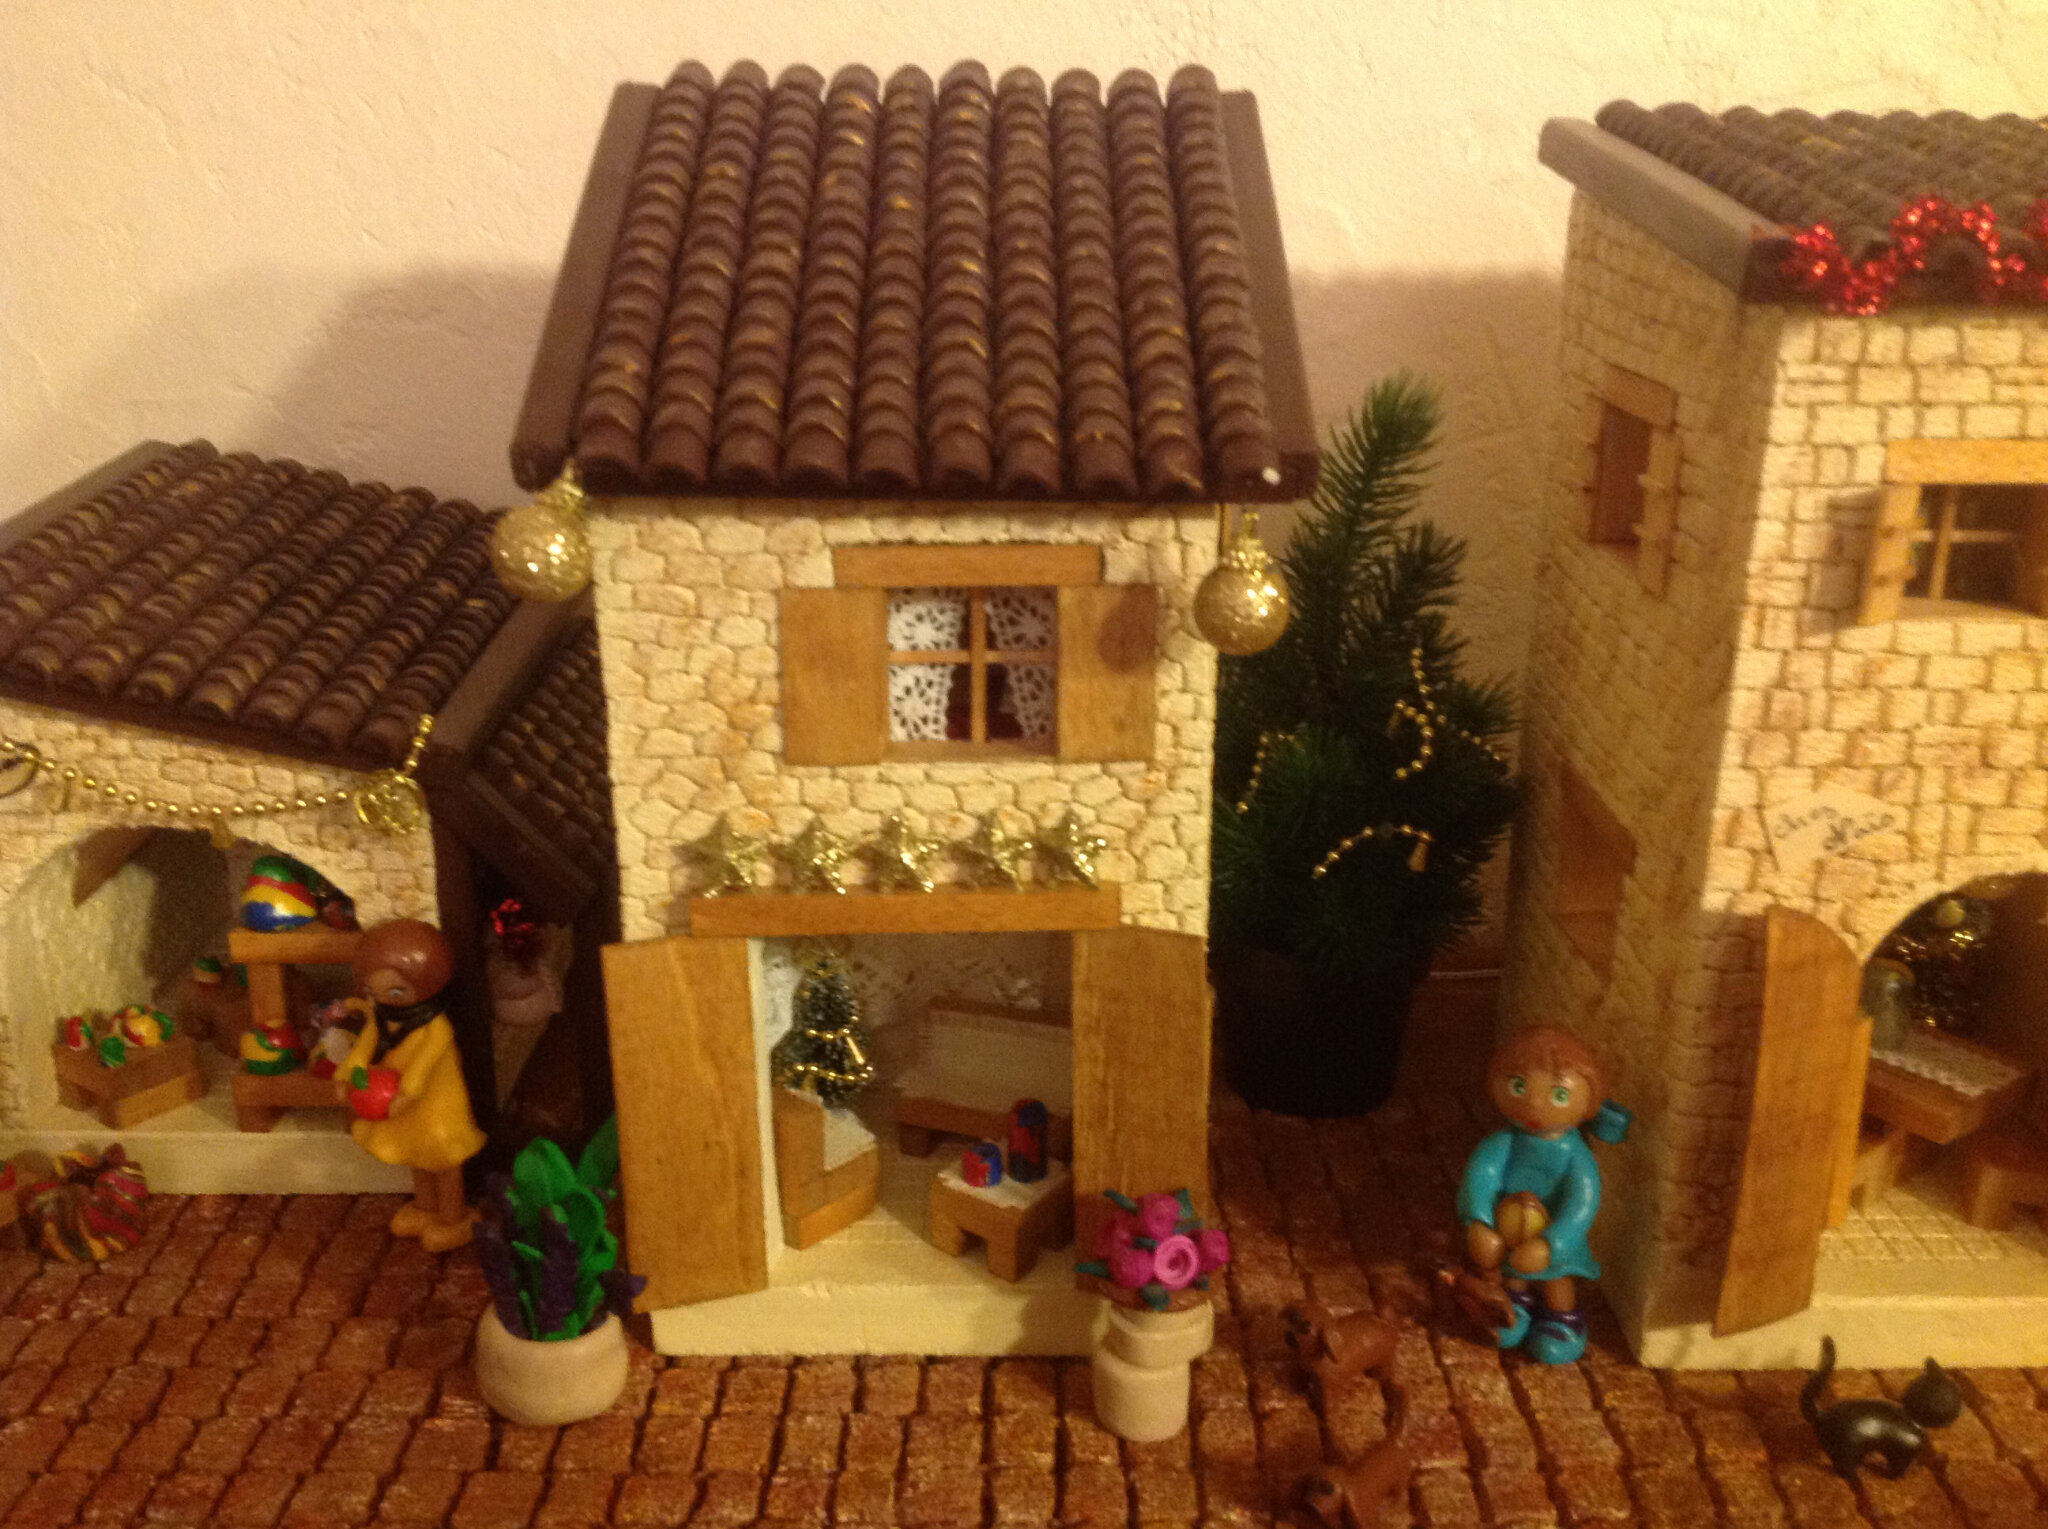 La maison du potier, village de Noël miniature - L'univers de Matebe